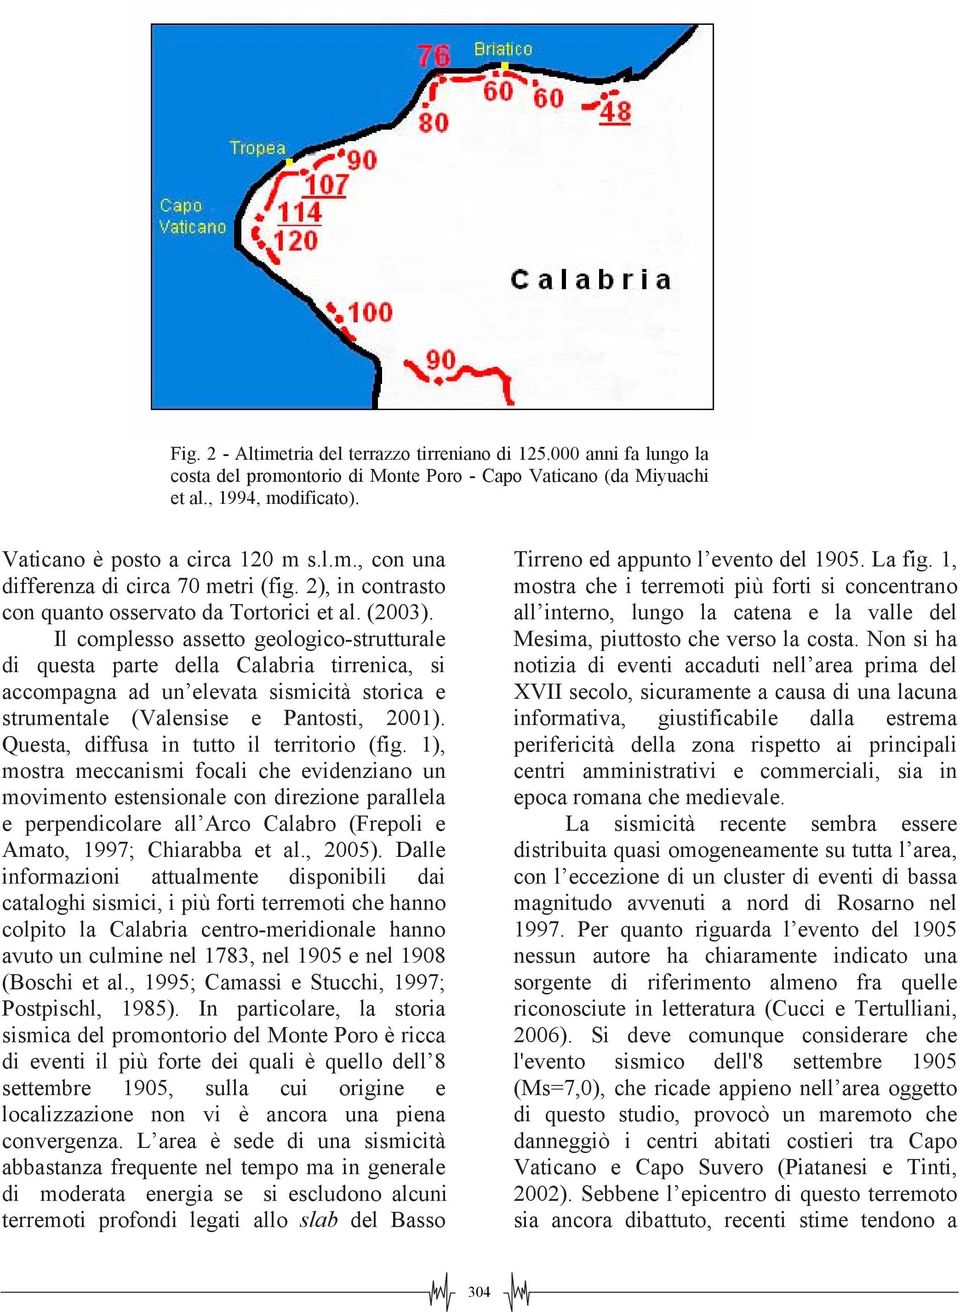 Il complesso assetto geologico-strutturale di questa parte della Calabria tirrenica, si accompagna ad un elevata sismicità storica e strumentale (Valensise e Pantosti, 2001).